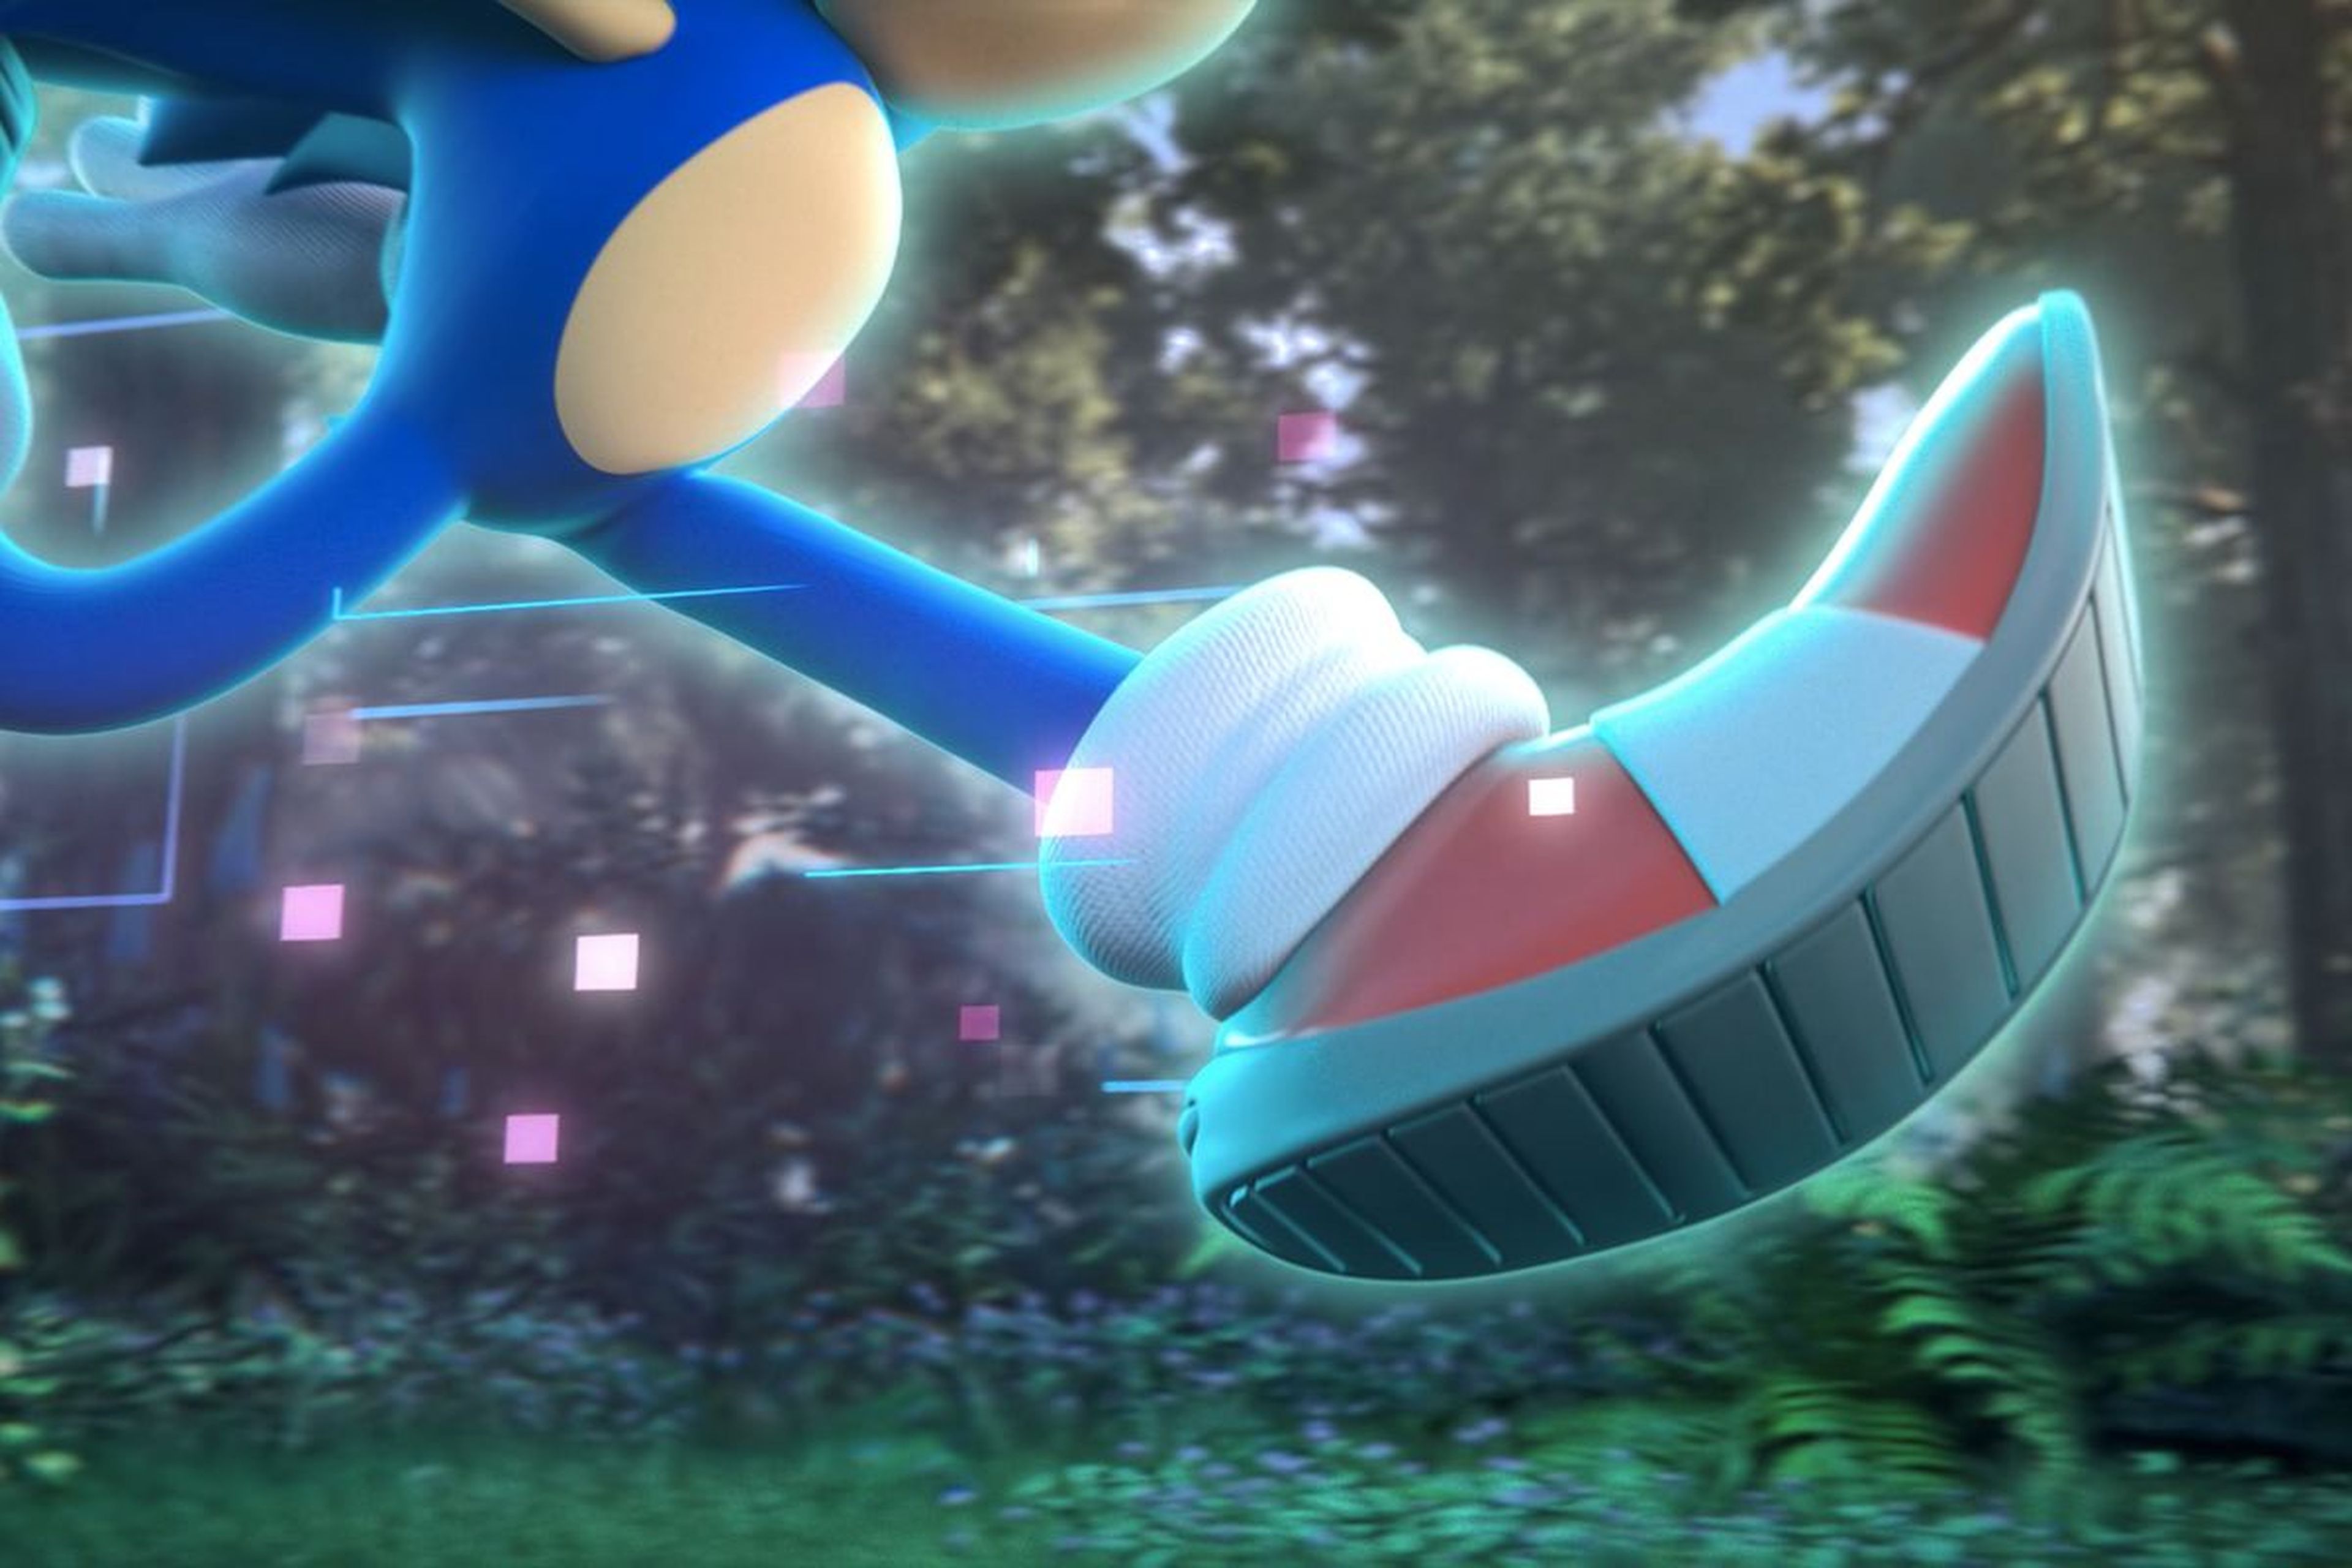 SEGA presentó muy brevemente su nuevo juego de Sonic (imagen). A priori no se verá en la E3 2021.